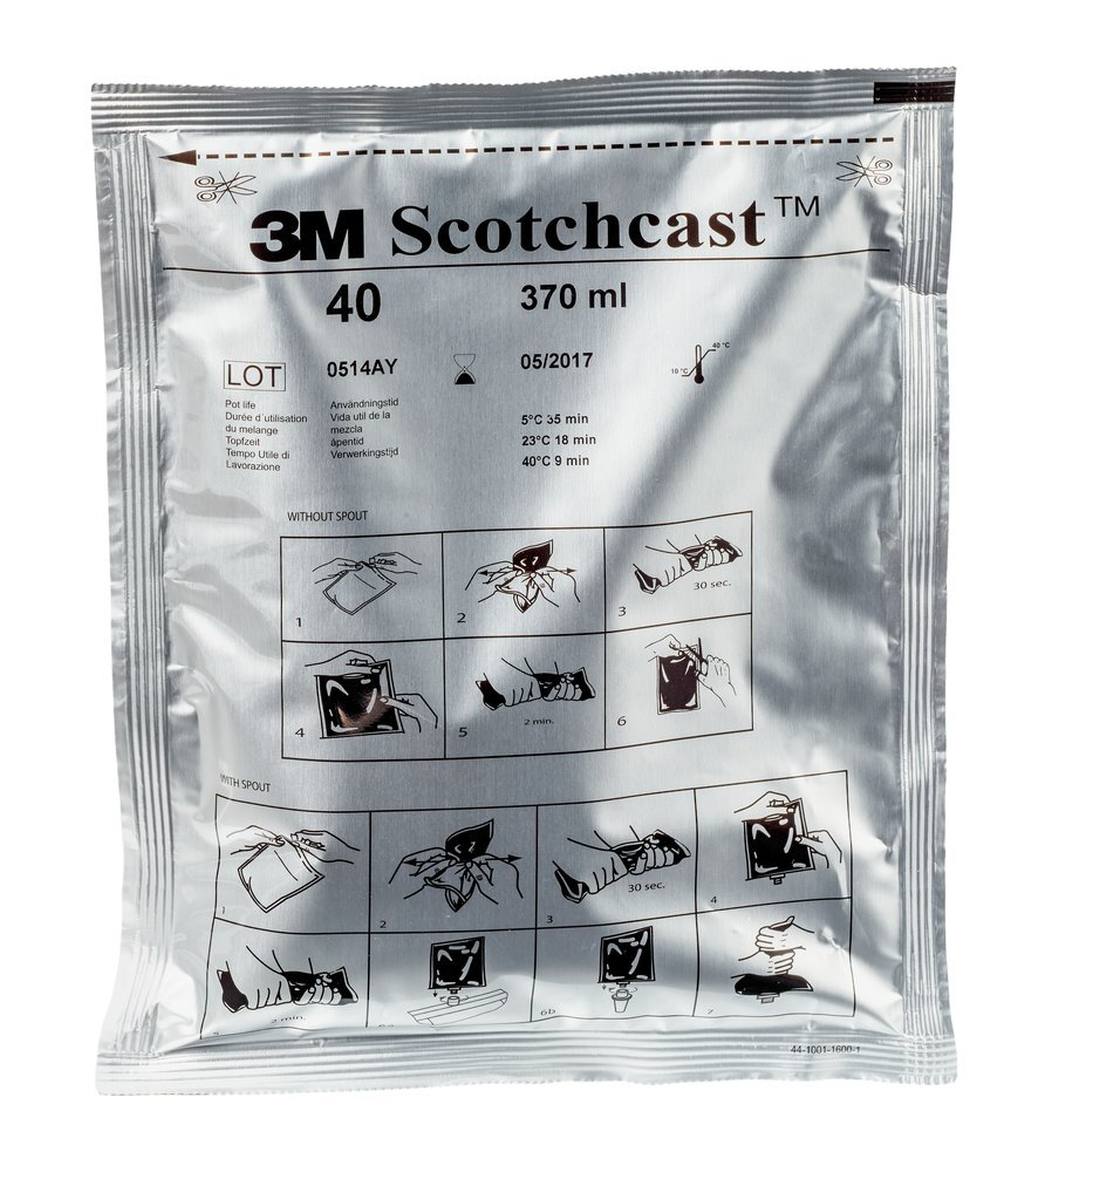 3M Scotchcast 40-C-B, resina poliuretanica per cavi, sistema GMG bicomponente, misura C, 370 ml, confezione sfusa